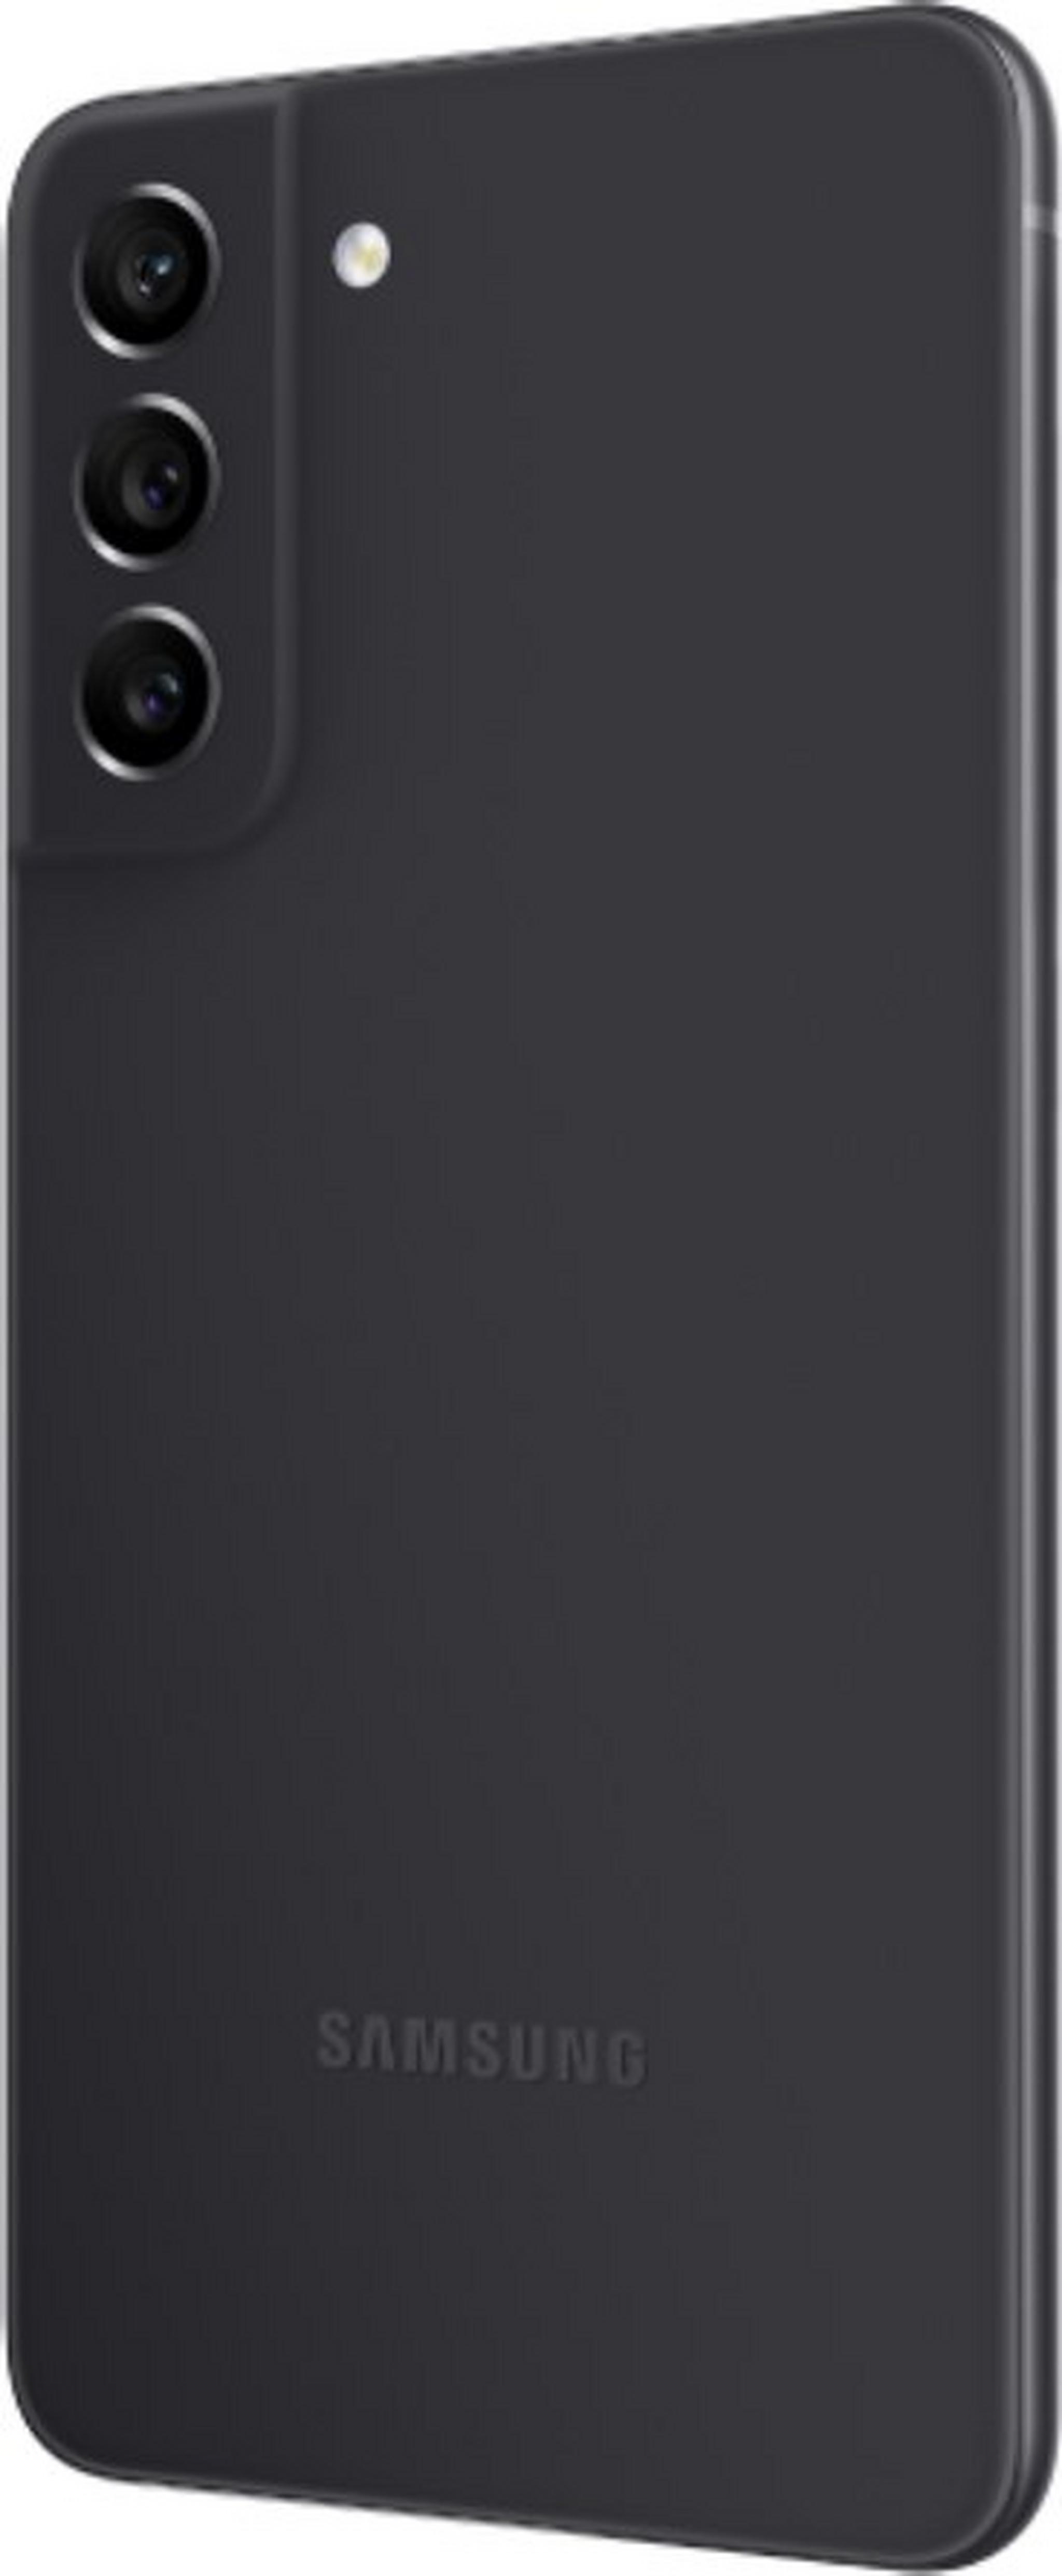 Samsung Galaxy S21 FE 5G 128GB Phone - Grey